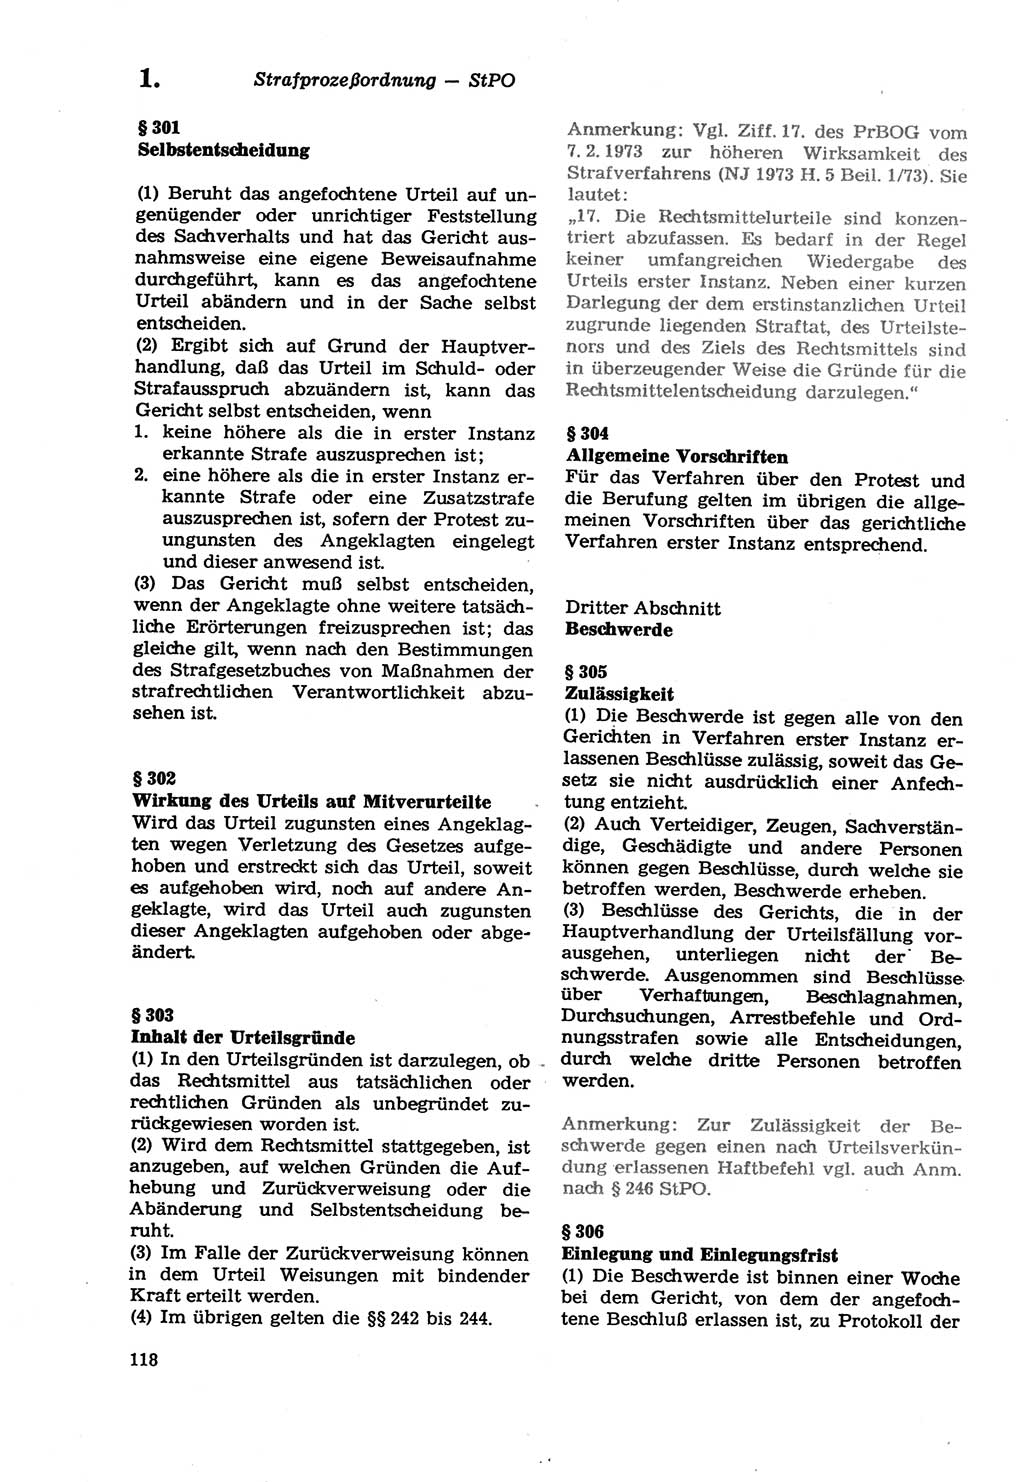 Strafprozeßordnung (StPO) der Deutschen Demokratischen Republik (DDR) sowie angrenzende Gesetze und Bestimmungen 1979, Seite 118 (StPO DDR Ges. Best. 1979, S. 118)